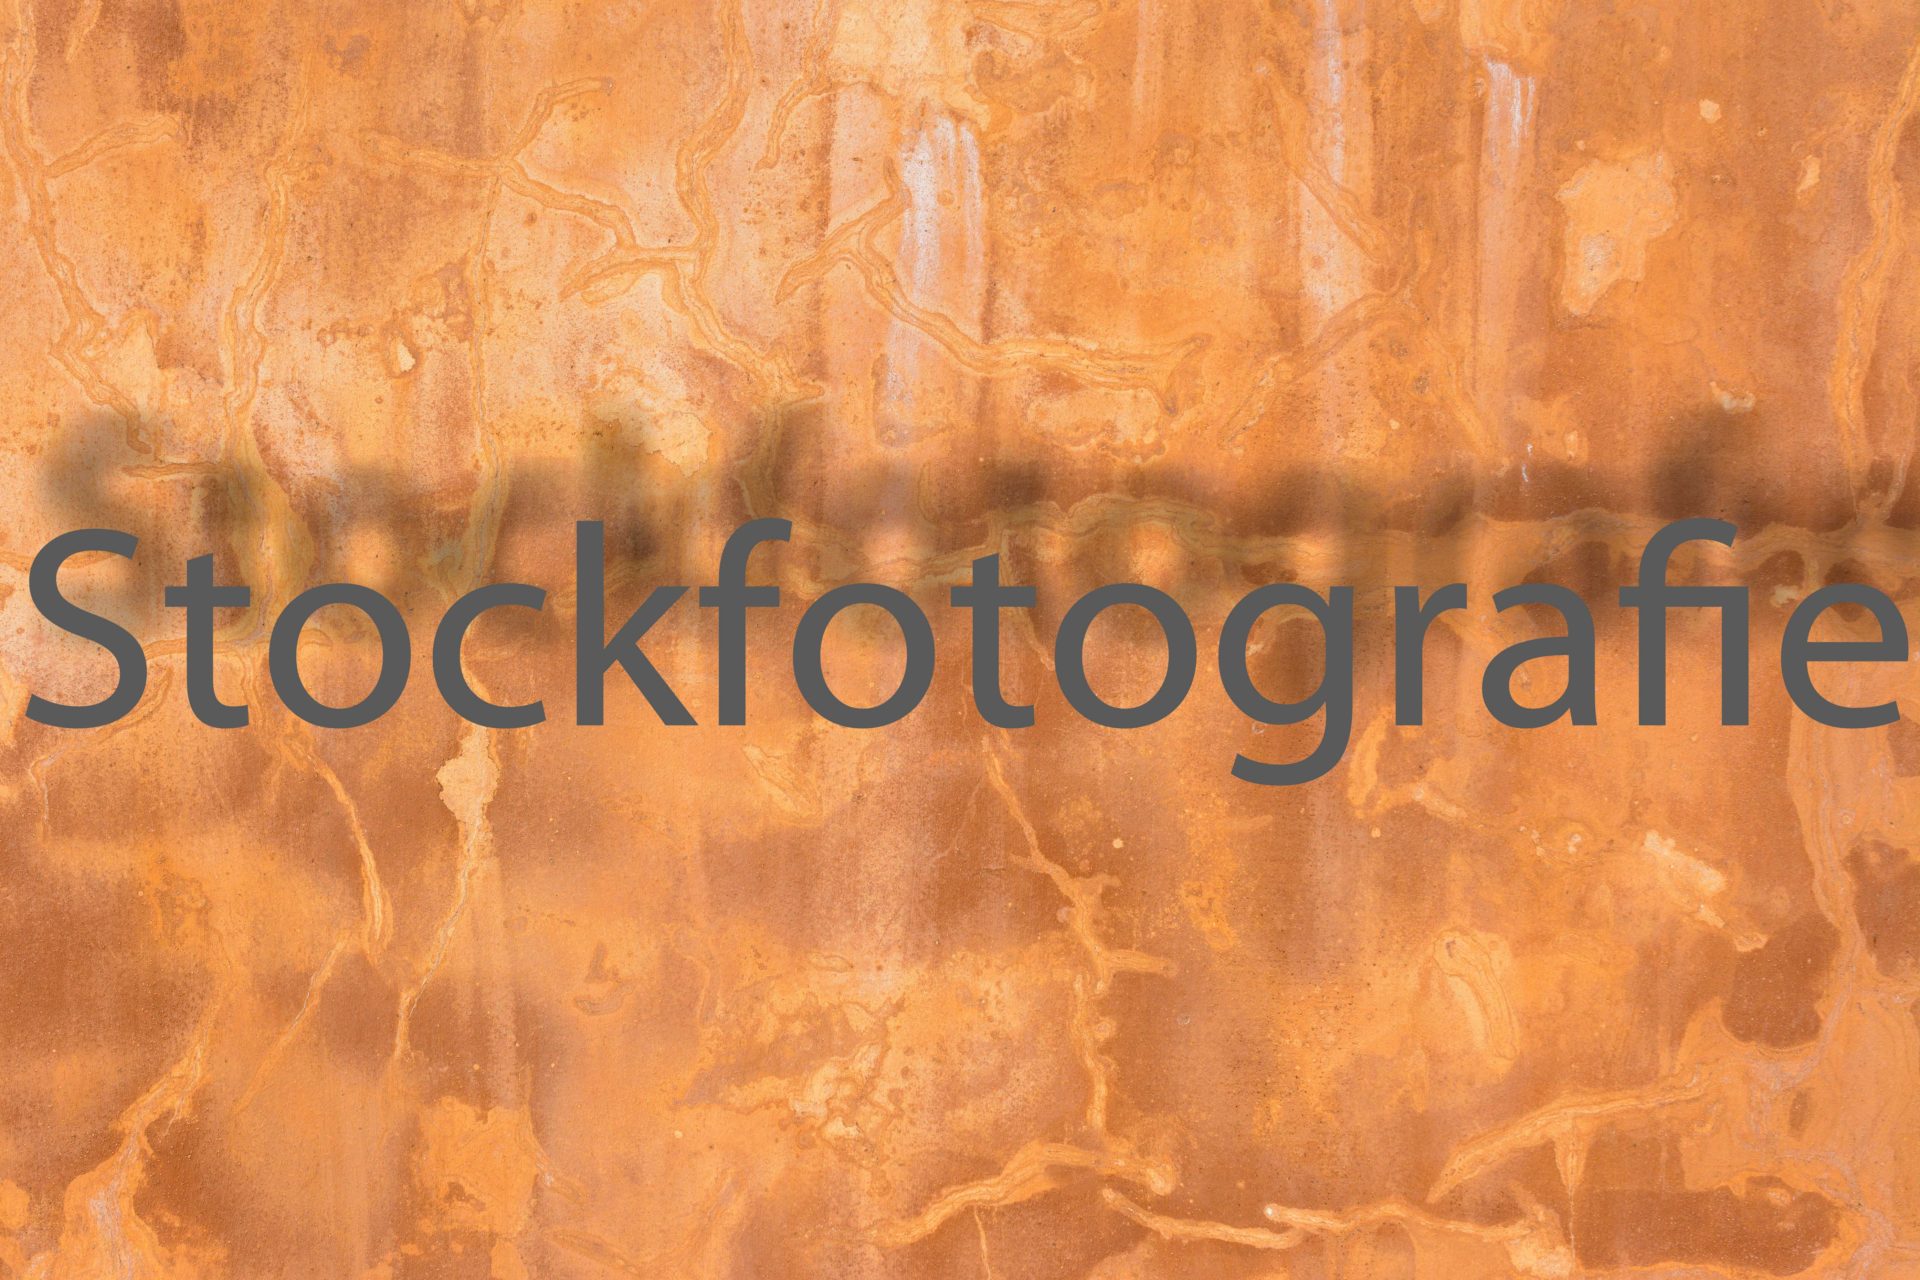 Stockfotografie für Anfänger, Teil 3 Kameraausrüstung etc.